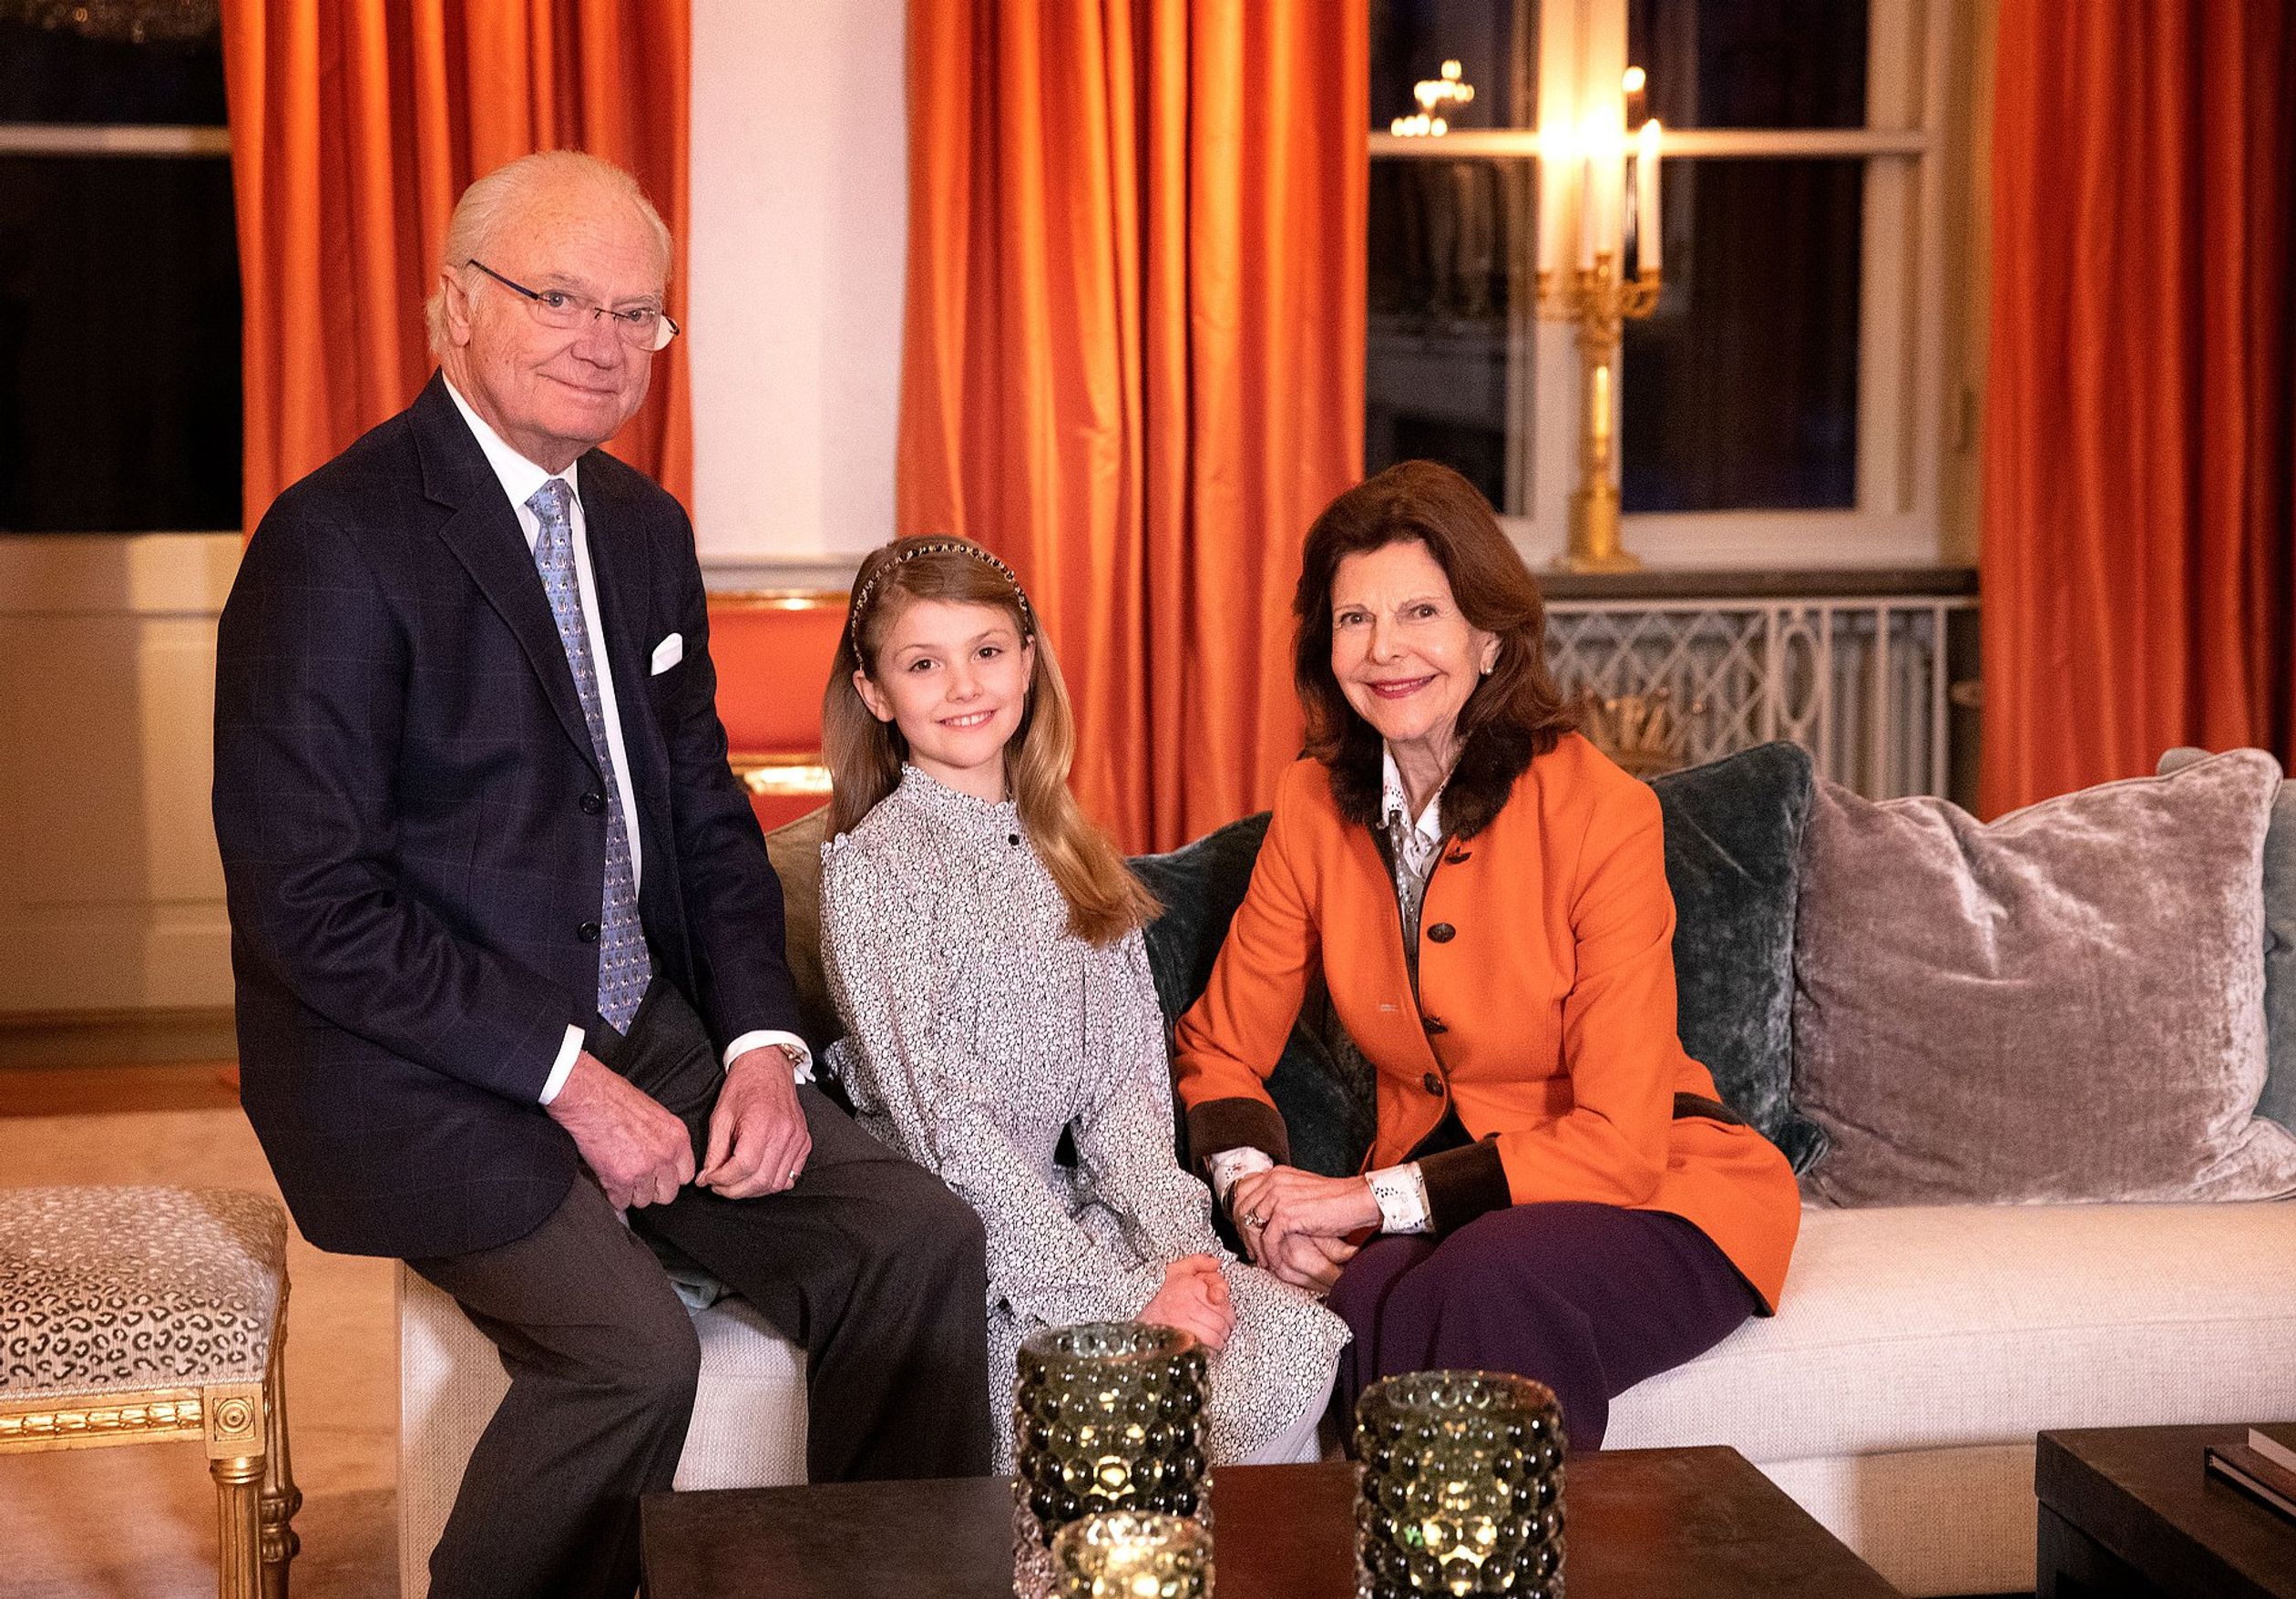 Koning Carl Gustaf en koningin Silvia poseren met hun jarige kleindochter in Slot Haga.